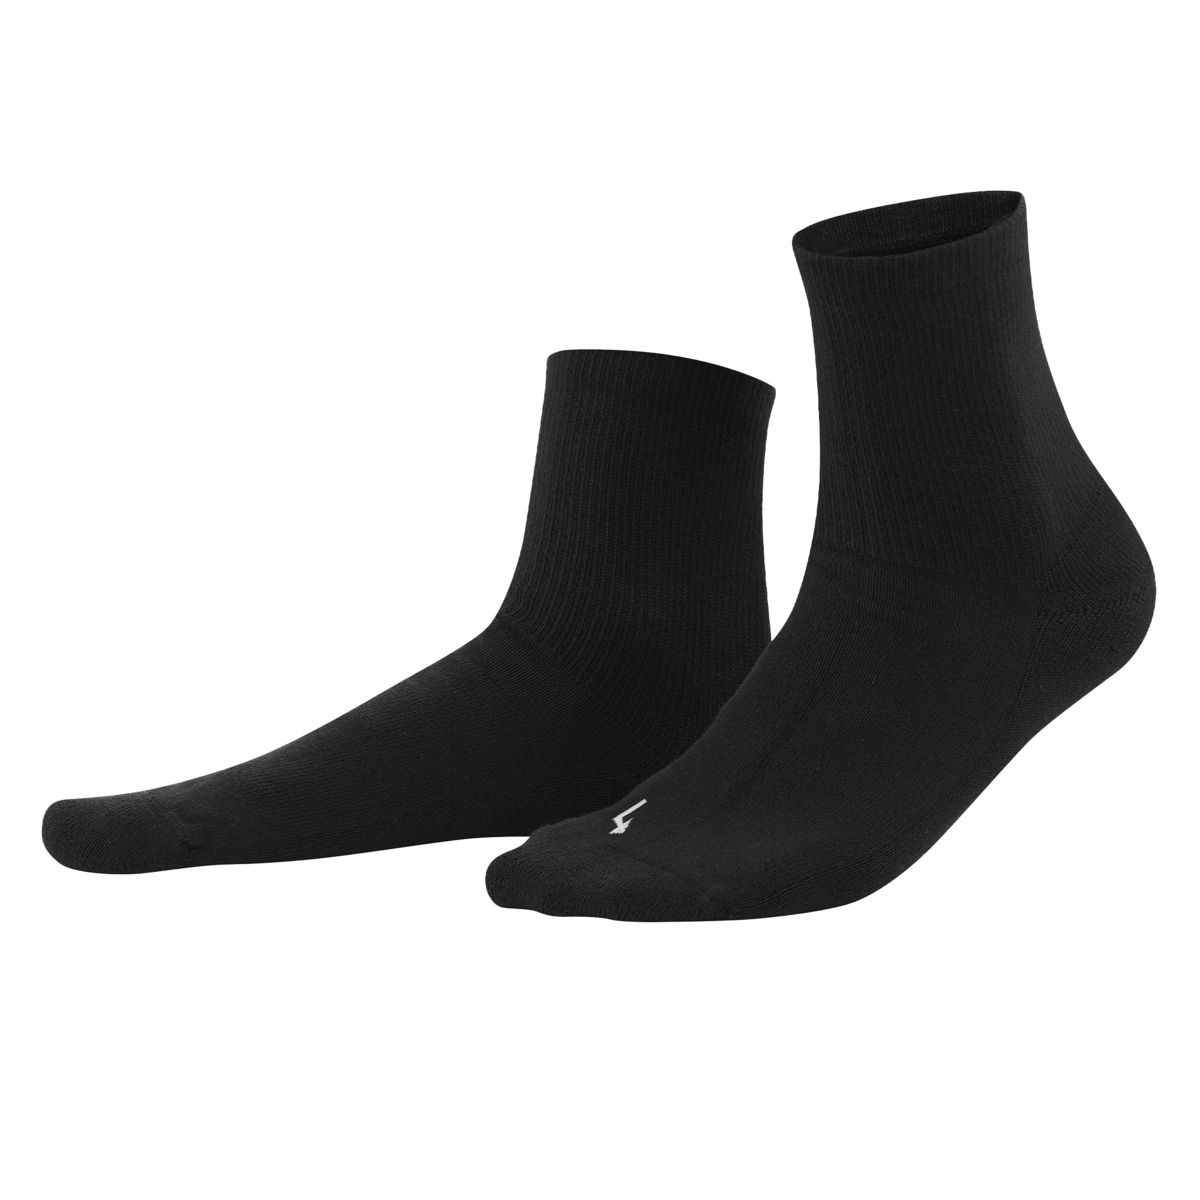 Black Sport Socks, 